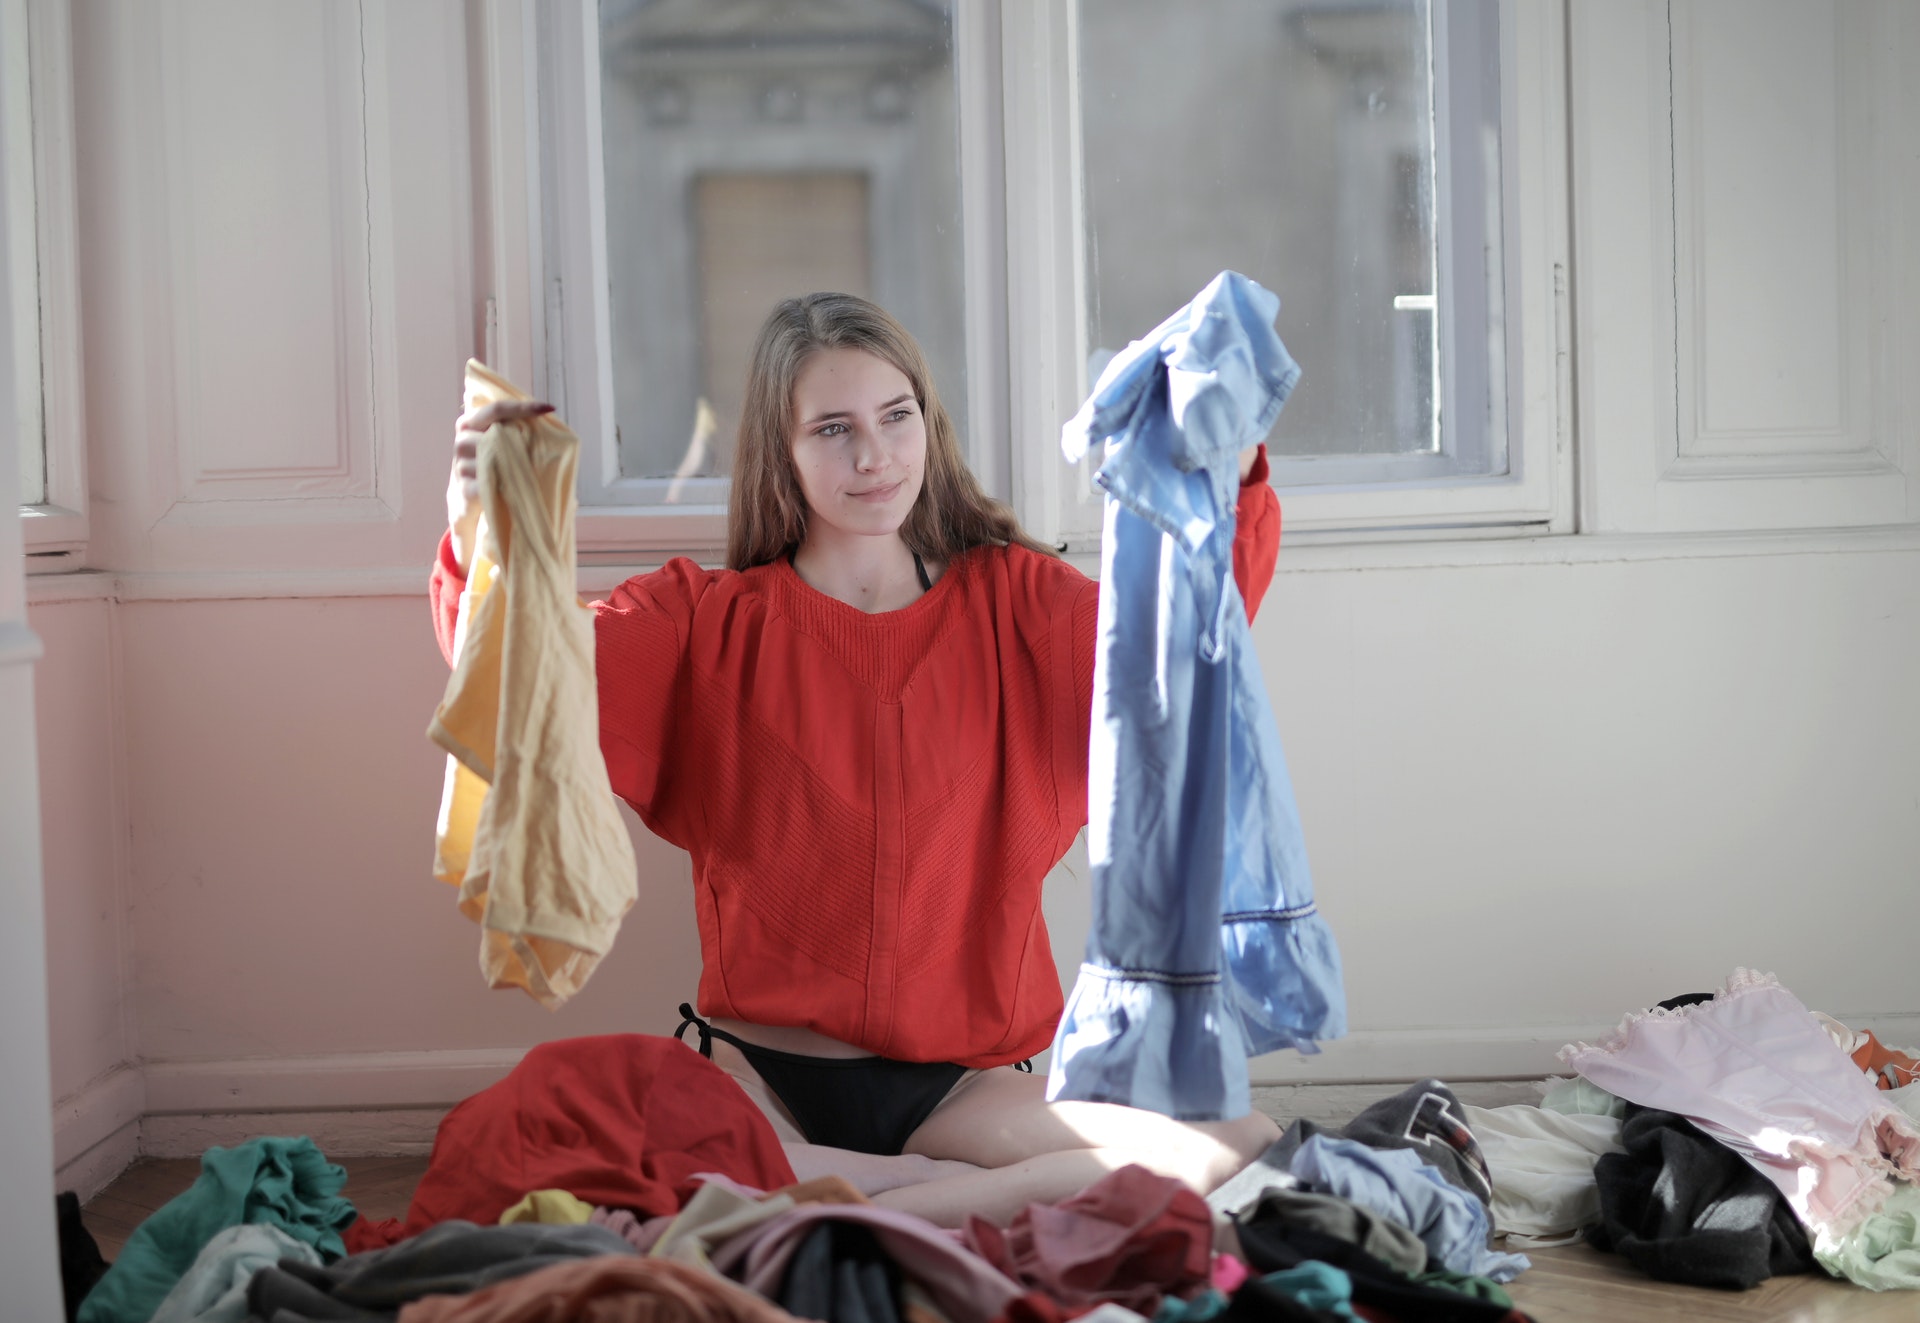 Mulher rodeada de roupas segurando peças em suas mãos. Imagem ilustrativa do texto sobre franquias para trabalhar na internet.